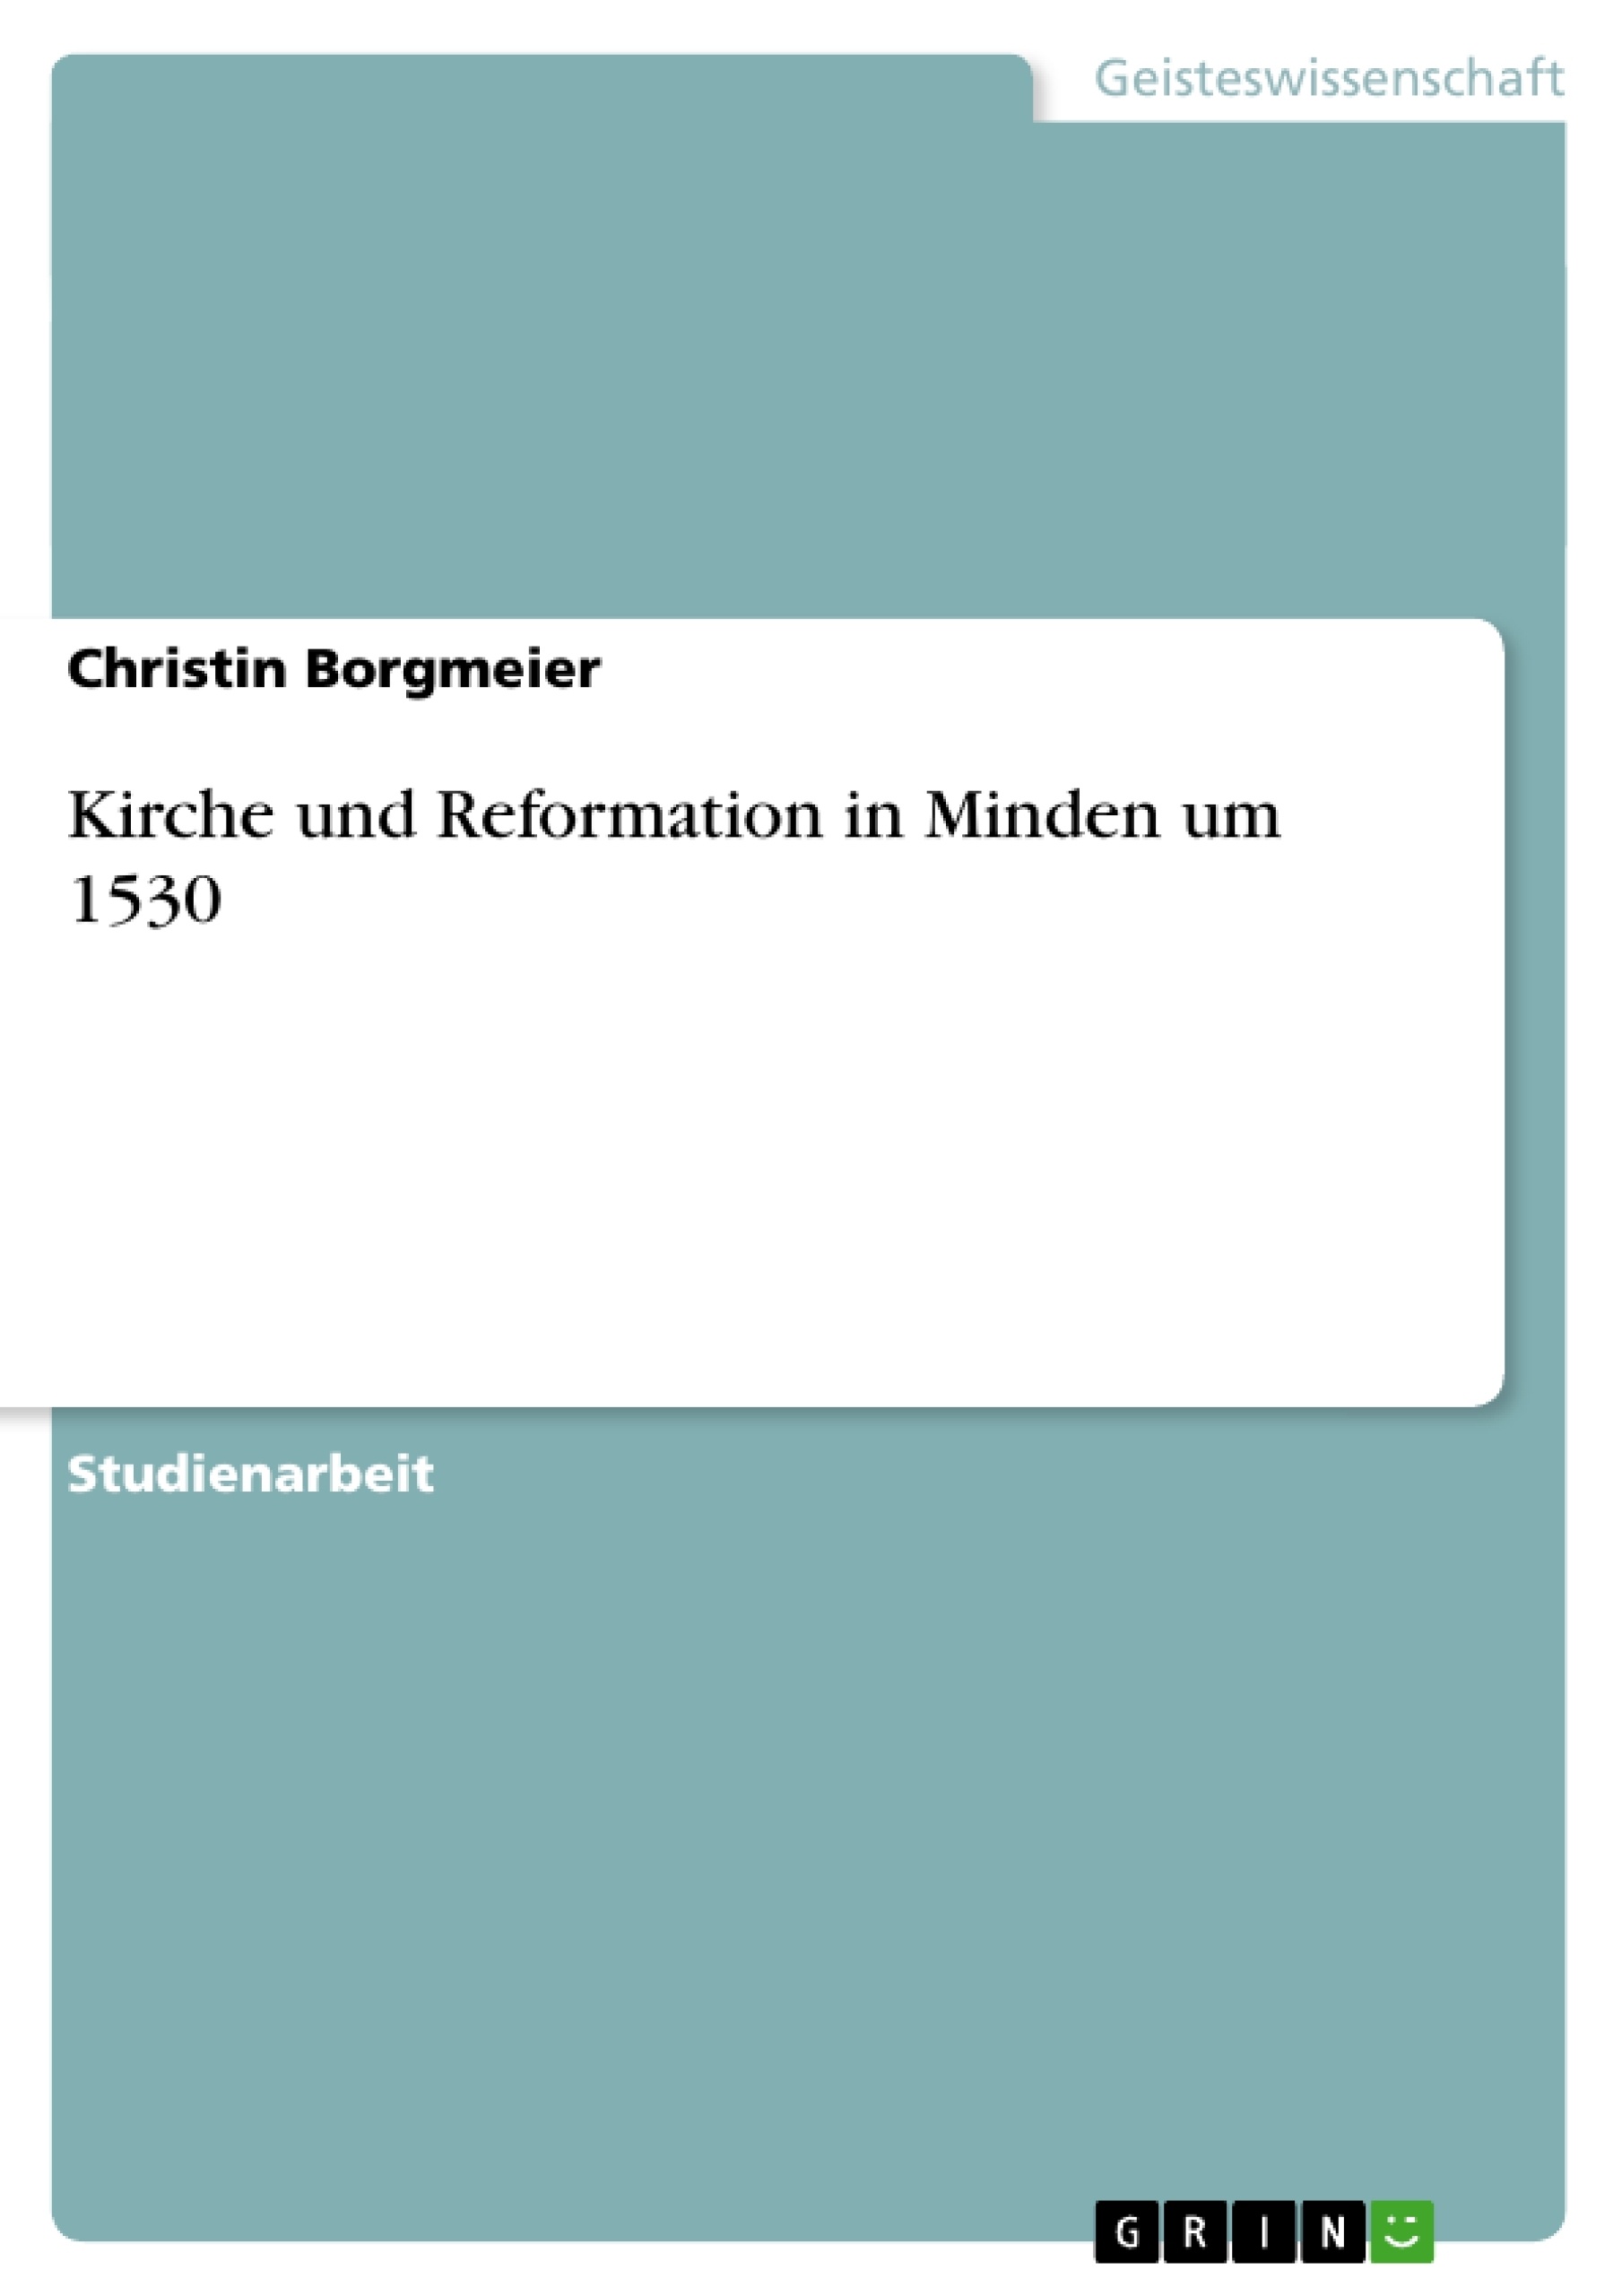 Title: Kirche und Reformation in Minden um 1530